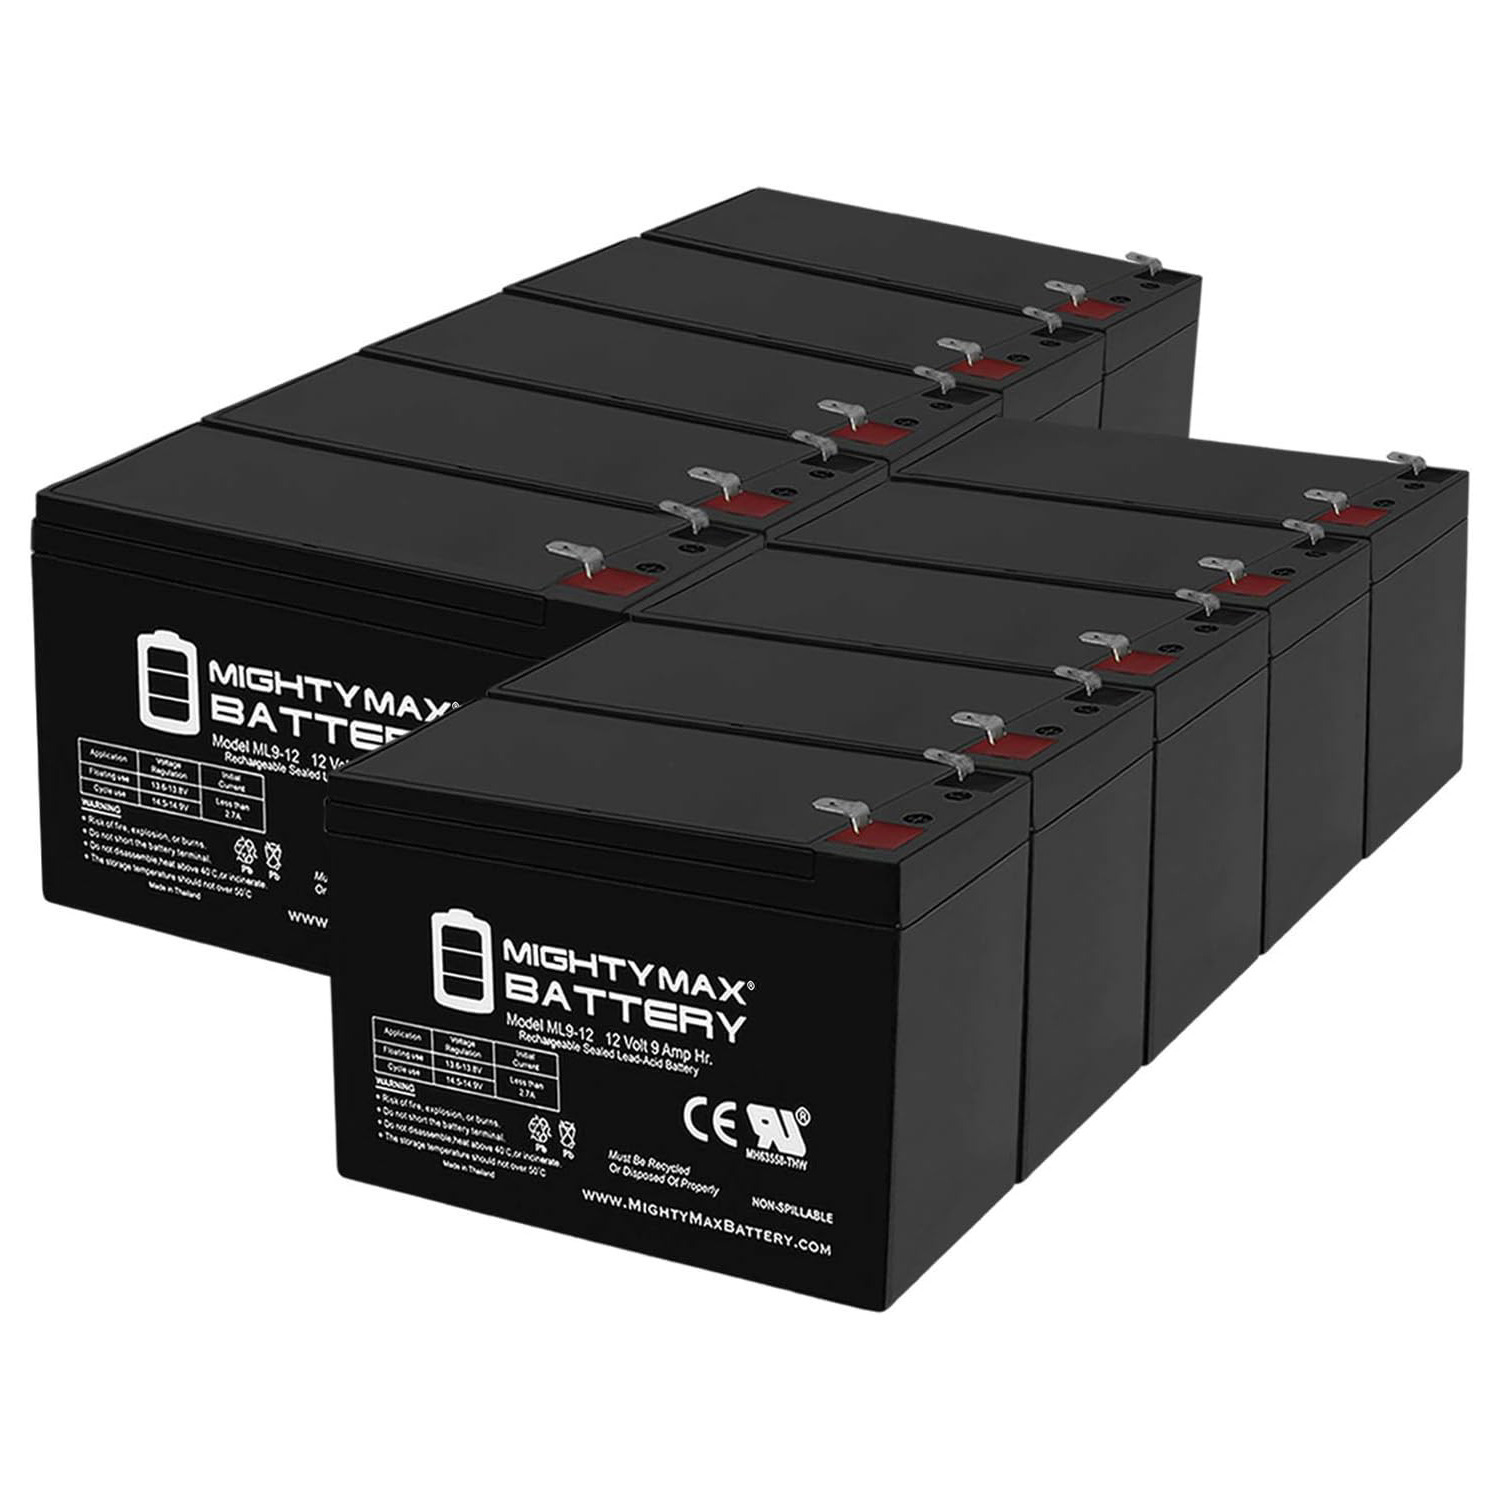 Altronix AL62412CX 12V, 9Ah Lead Acid Battery - 10 Pack